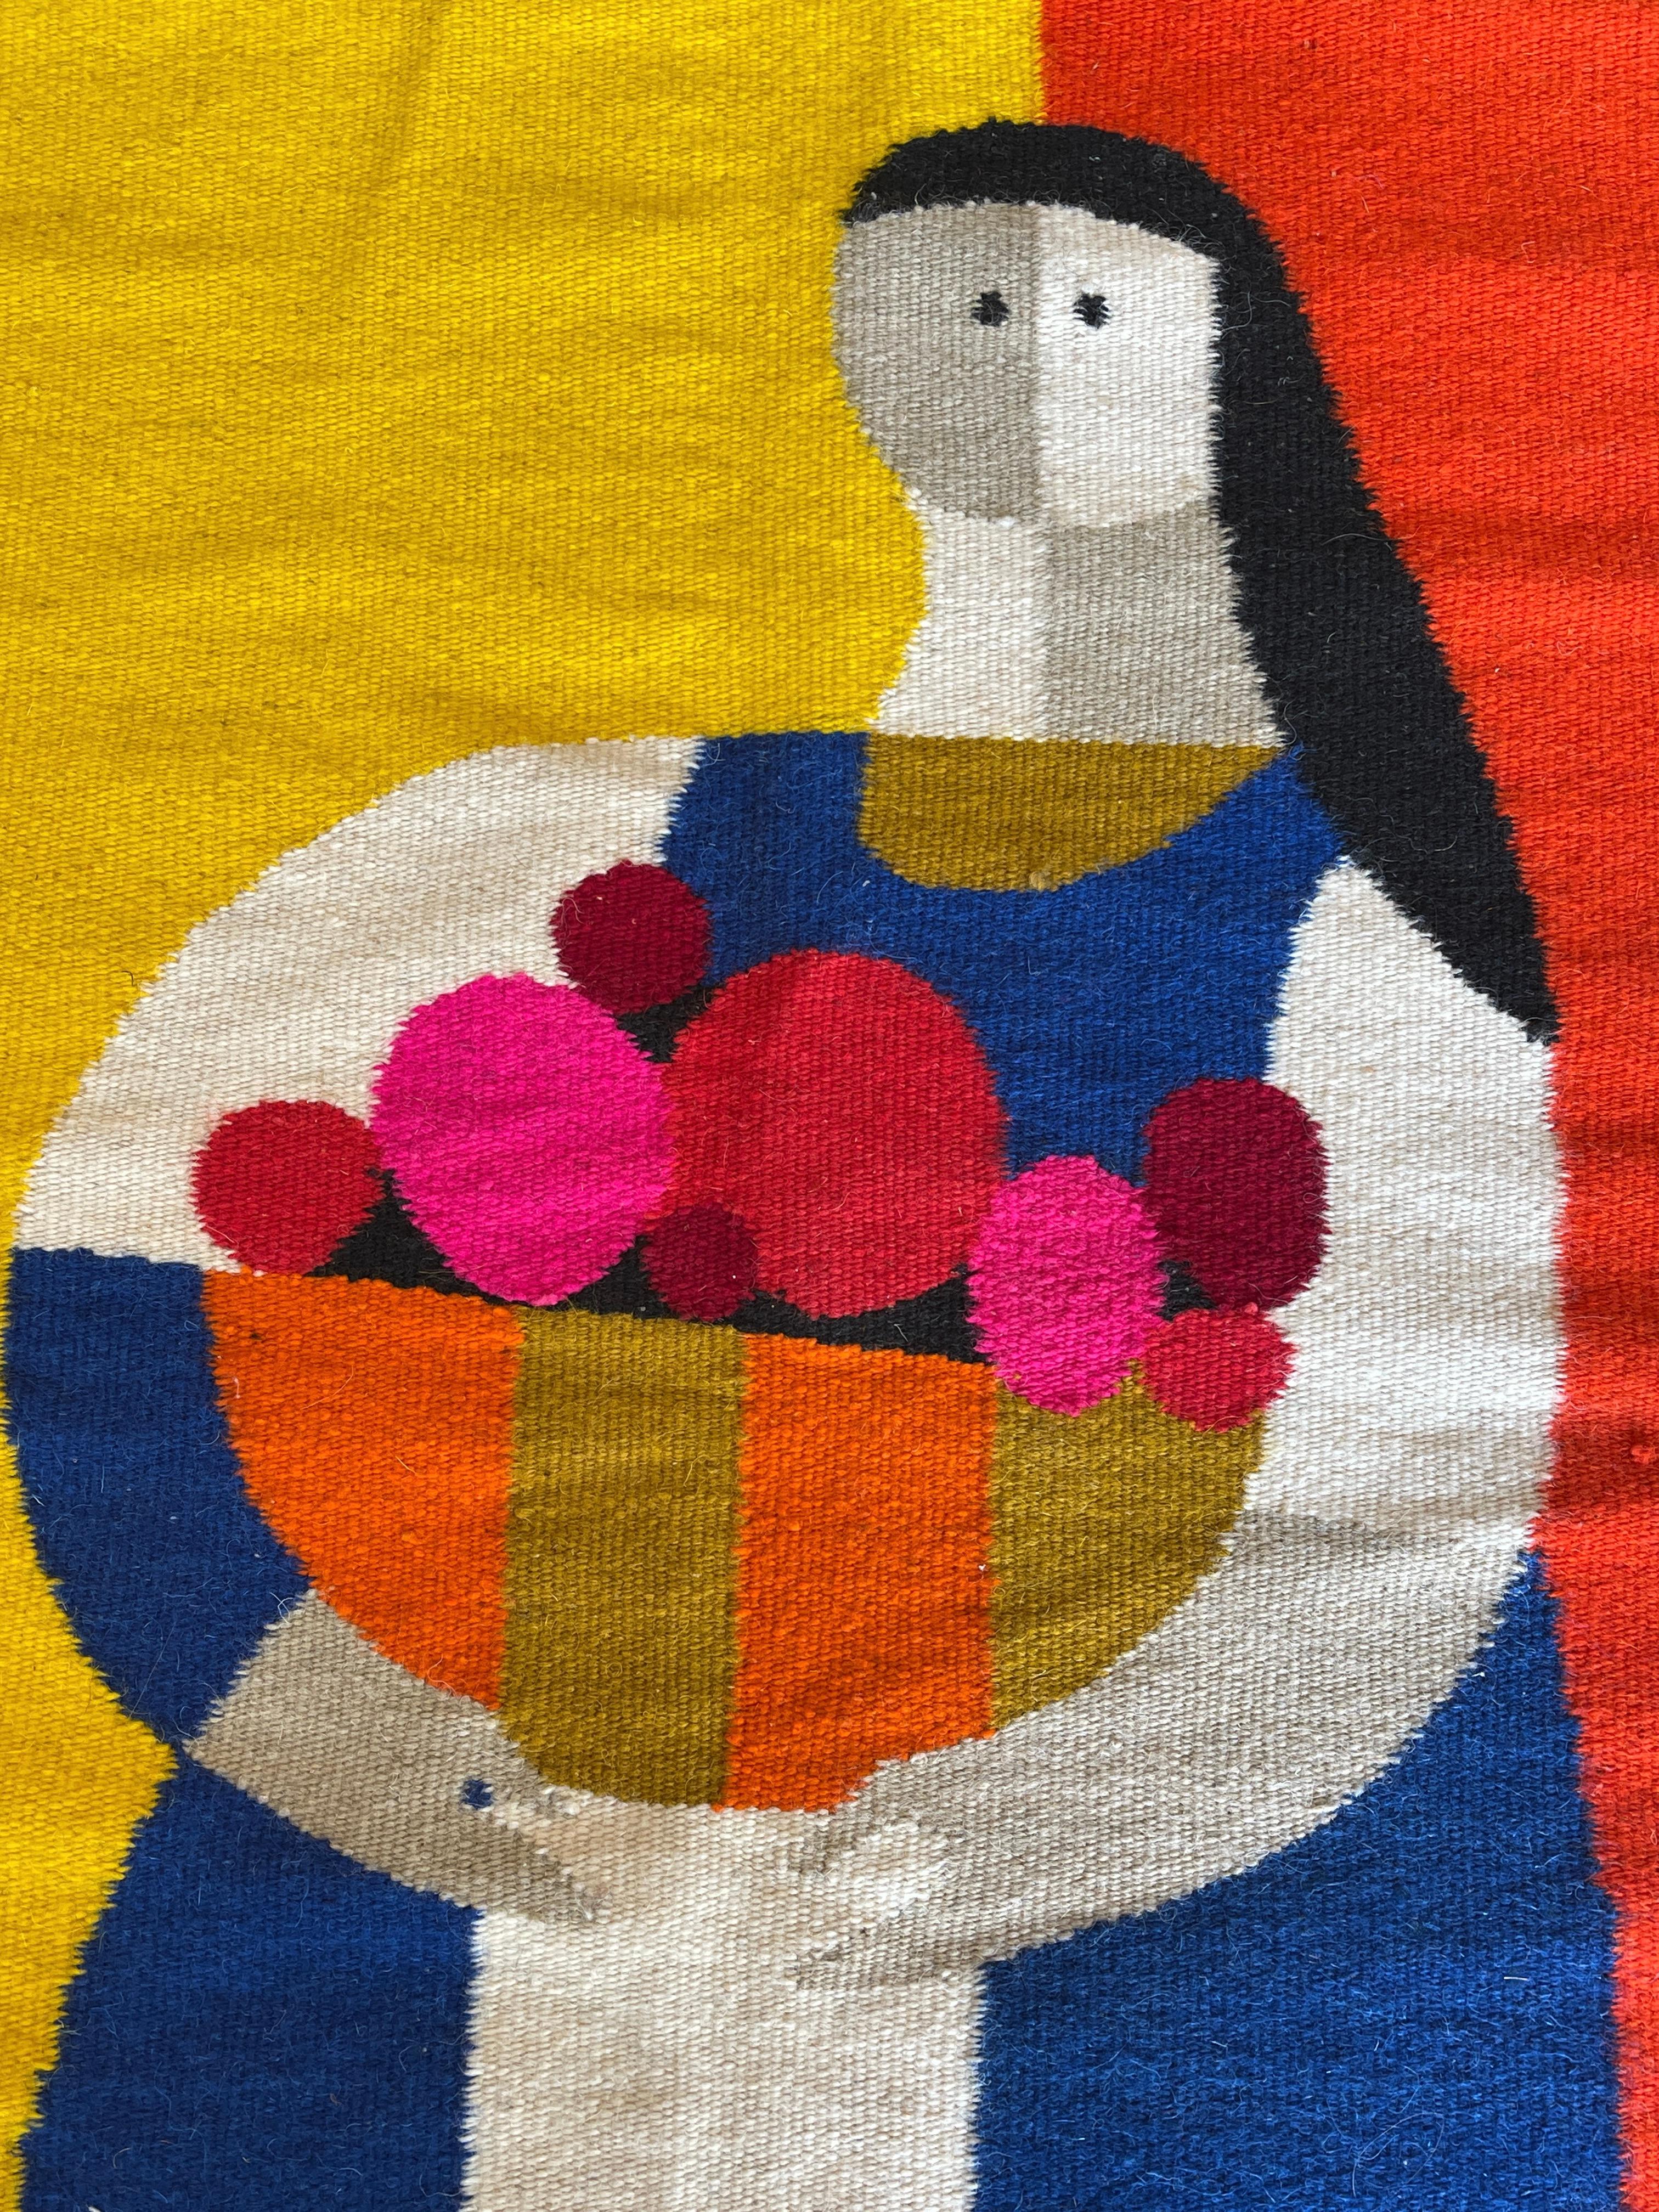 Tissage Superbe tapisserie murale en laine vibrante Campasena conçue par Evelyn Ackerman